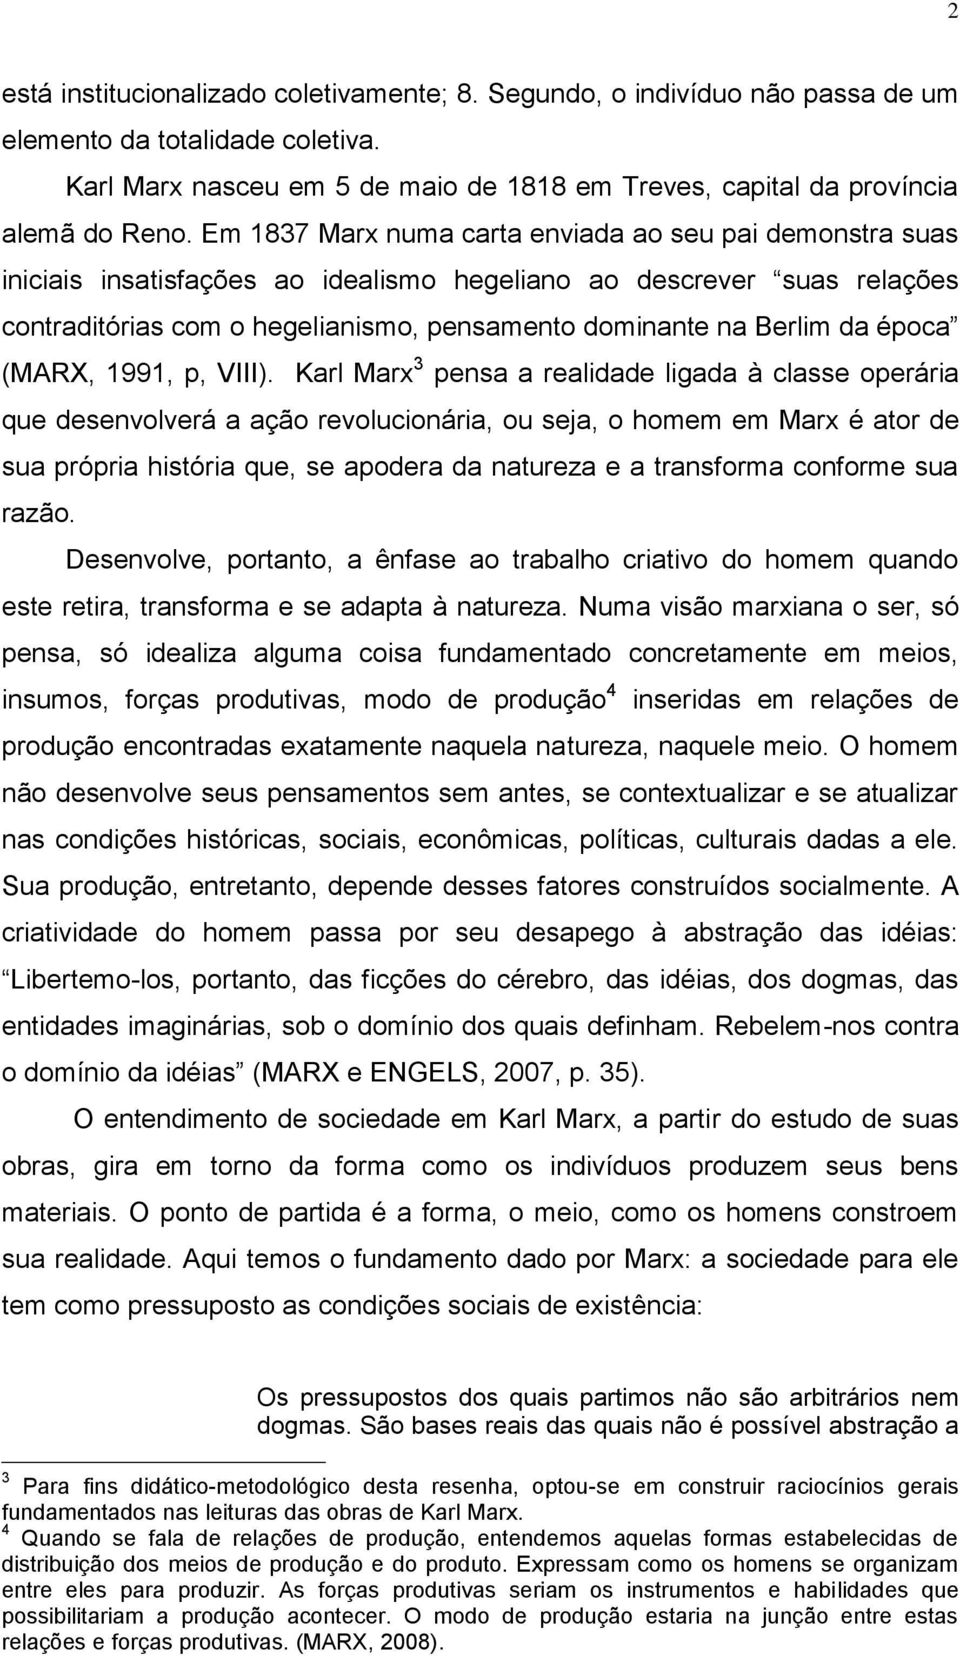 época (MARX, 1991, p, VIII).